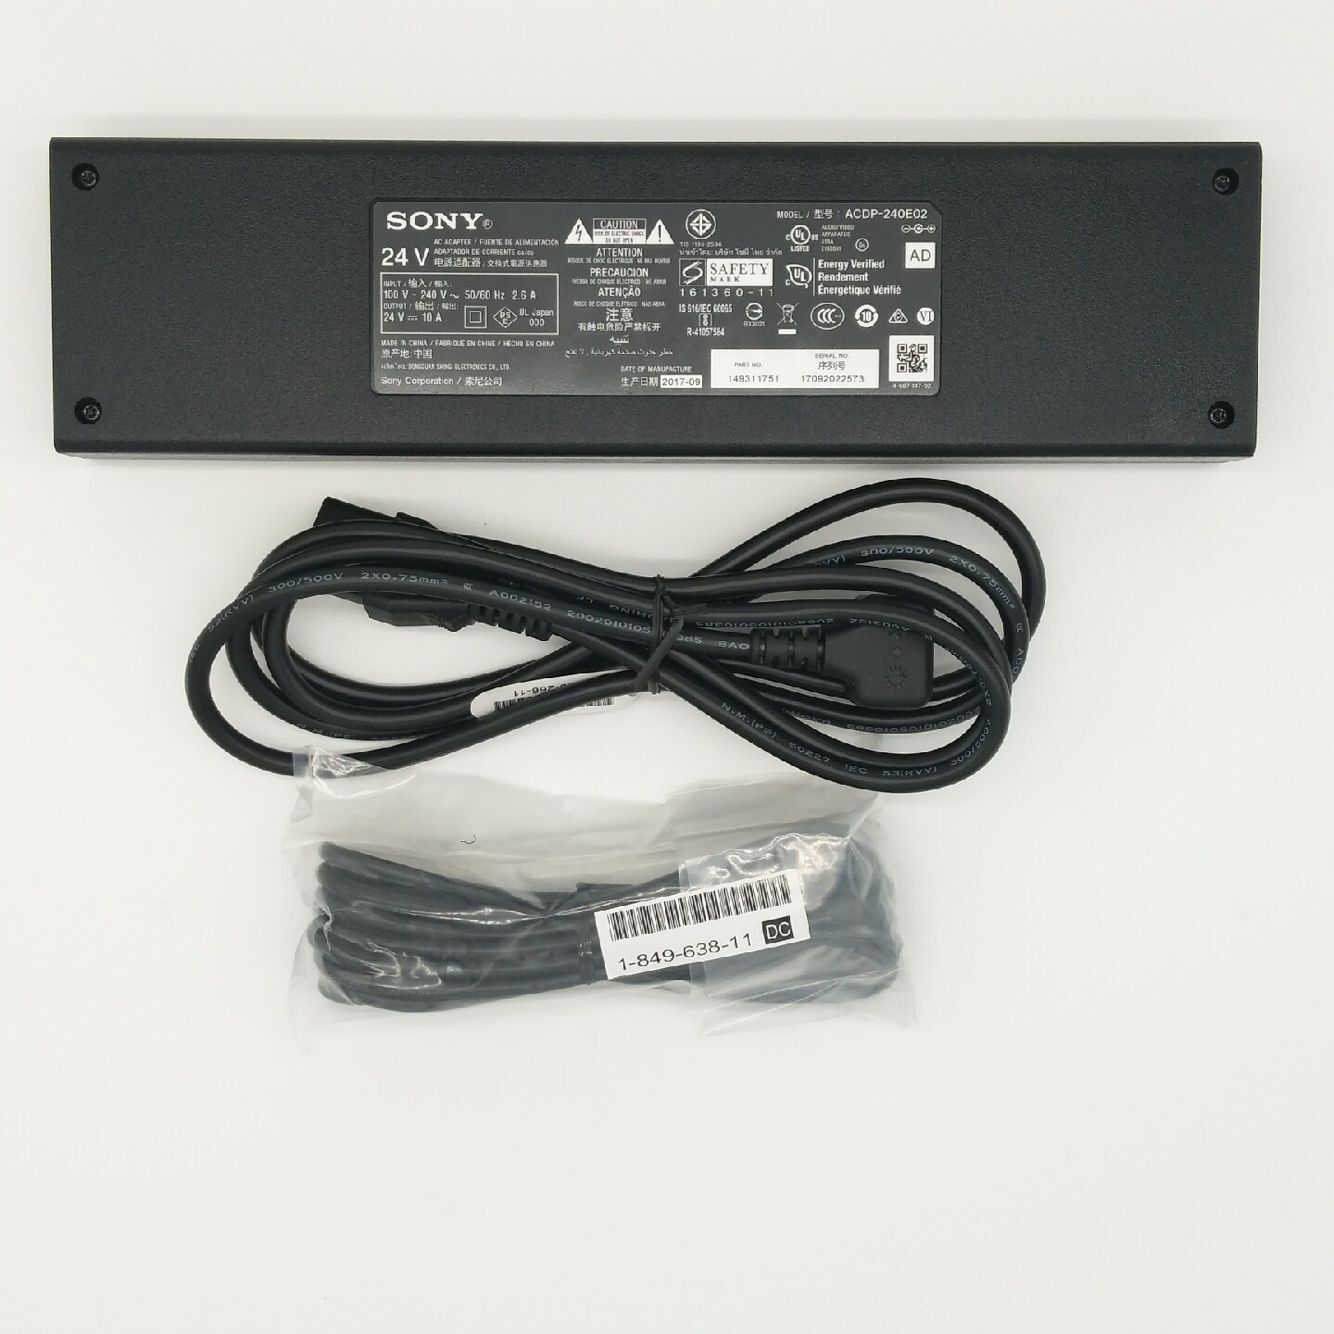 Original Sony AC Adaptor 240W ACDP-240E01 149311721